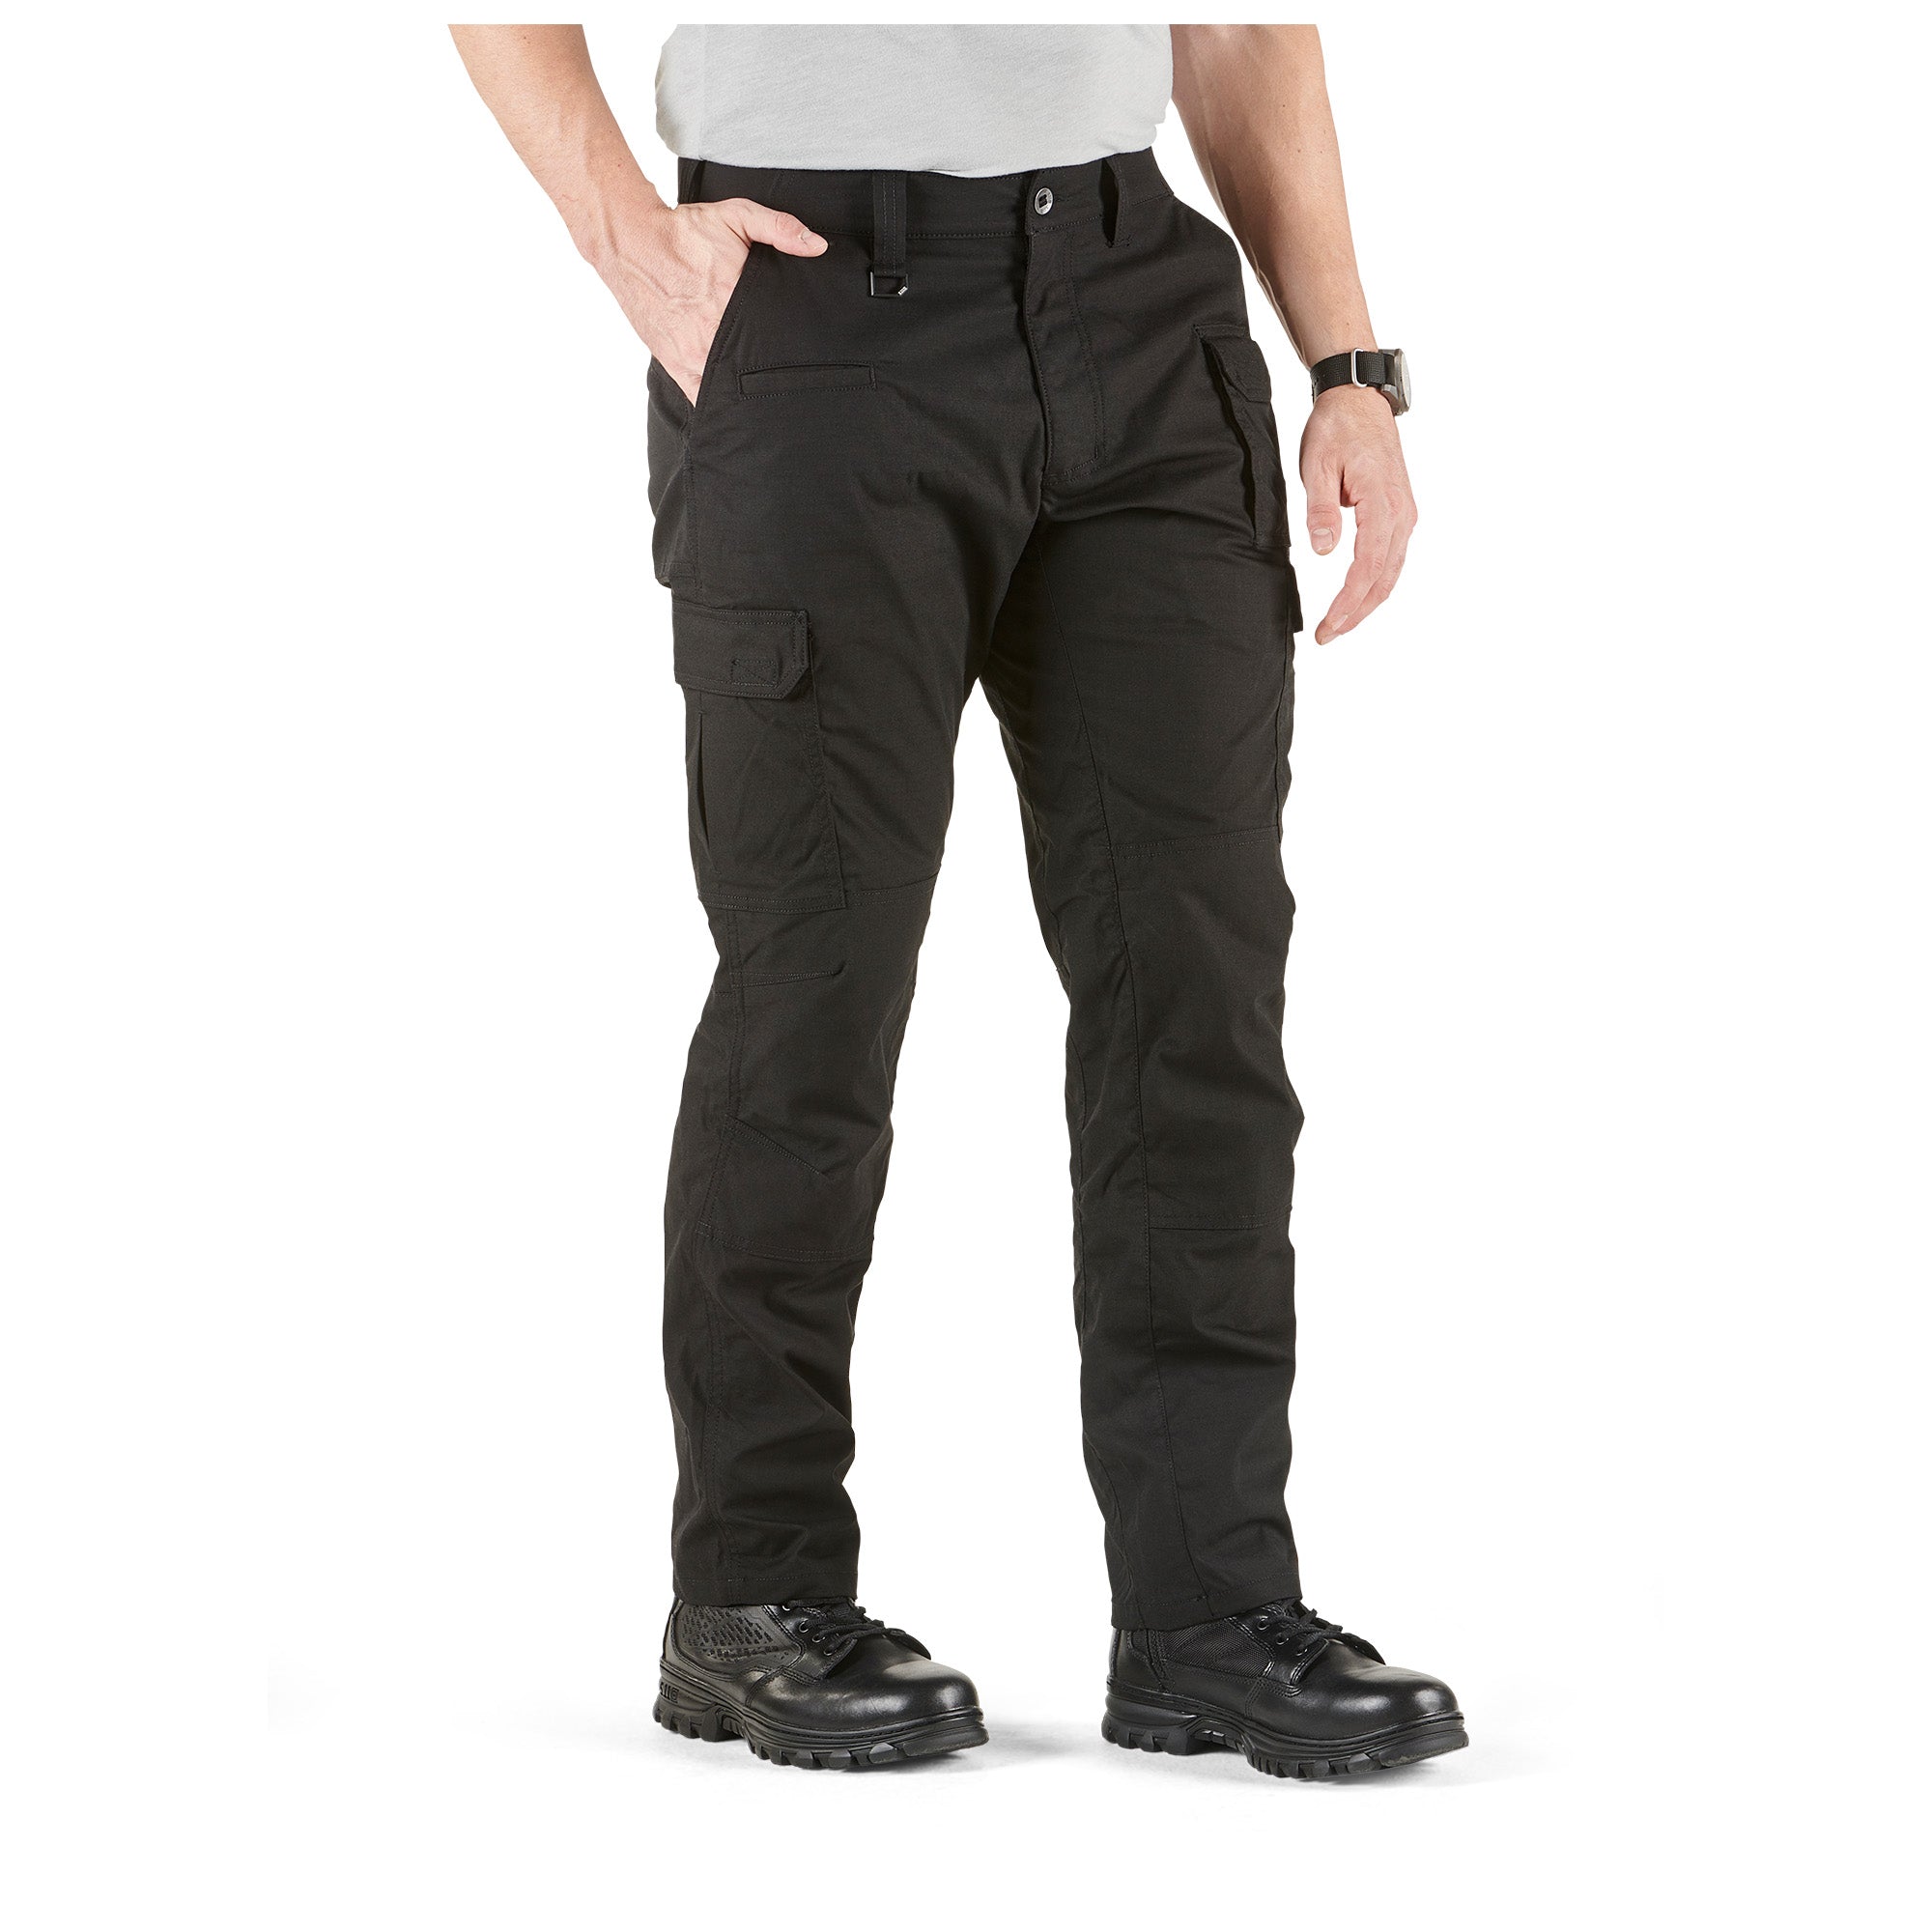 5.11 Tactical ABR Pro Pants - Black